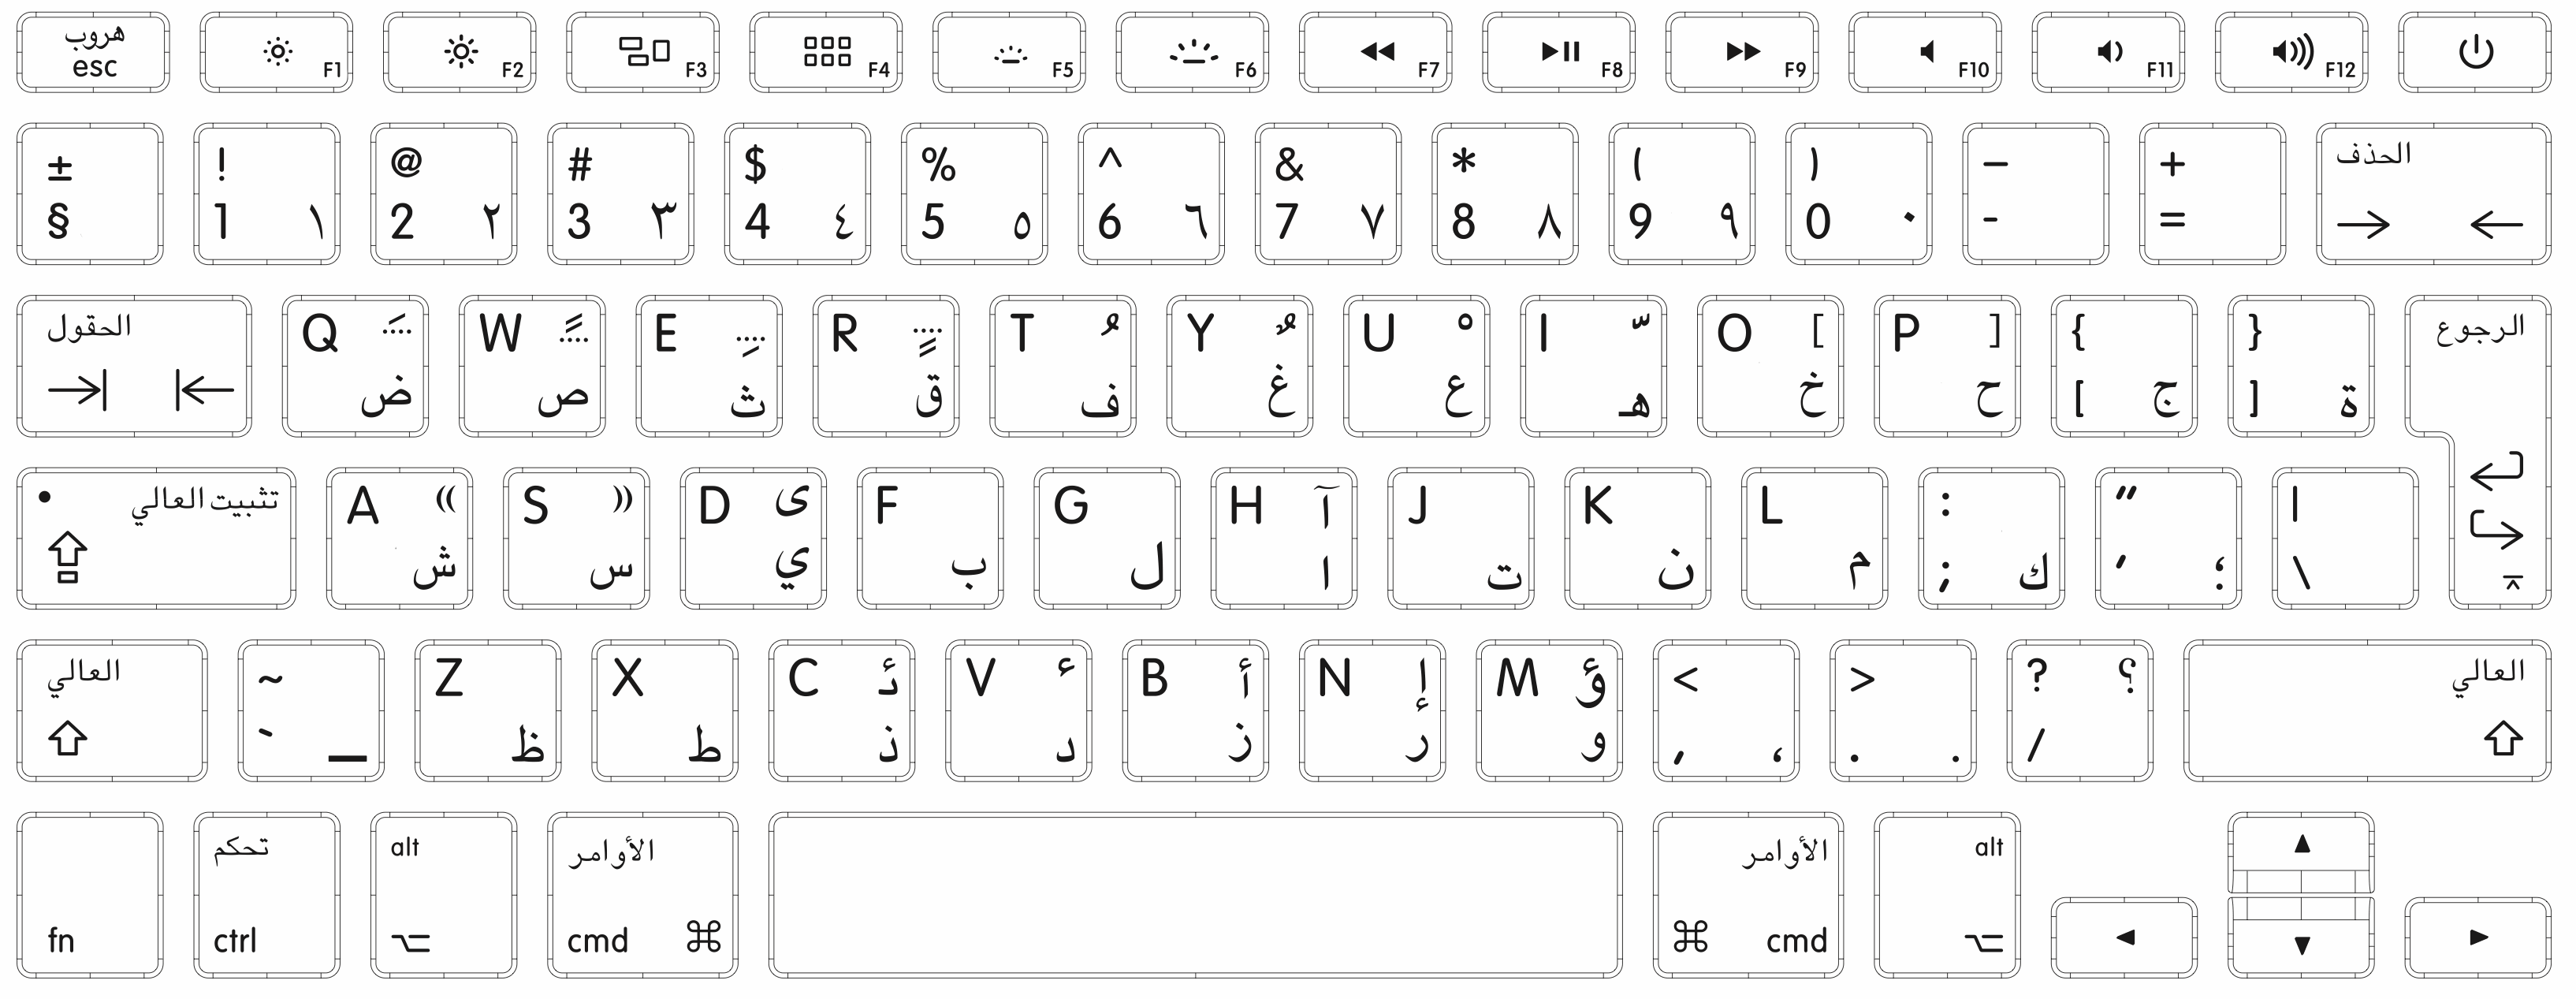 键盘图片字母位置 108键盘键位图高清_键盘图片高清大图